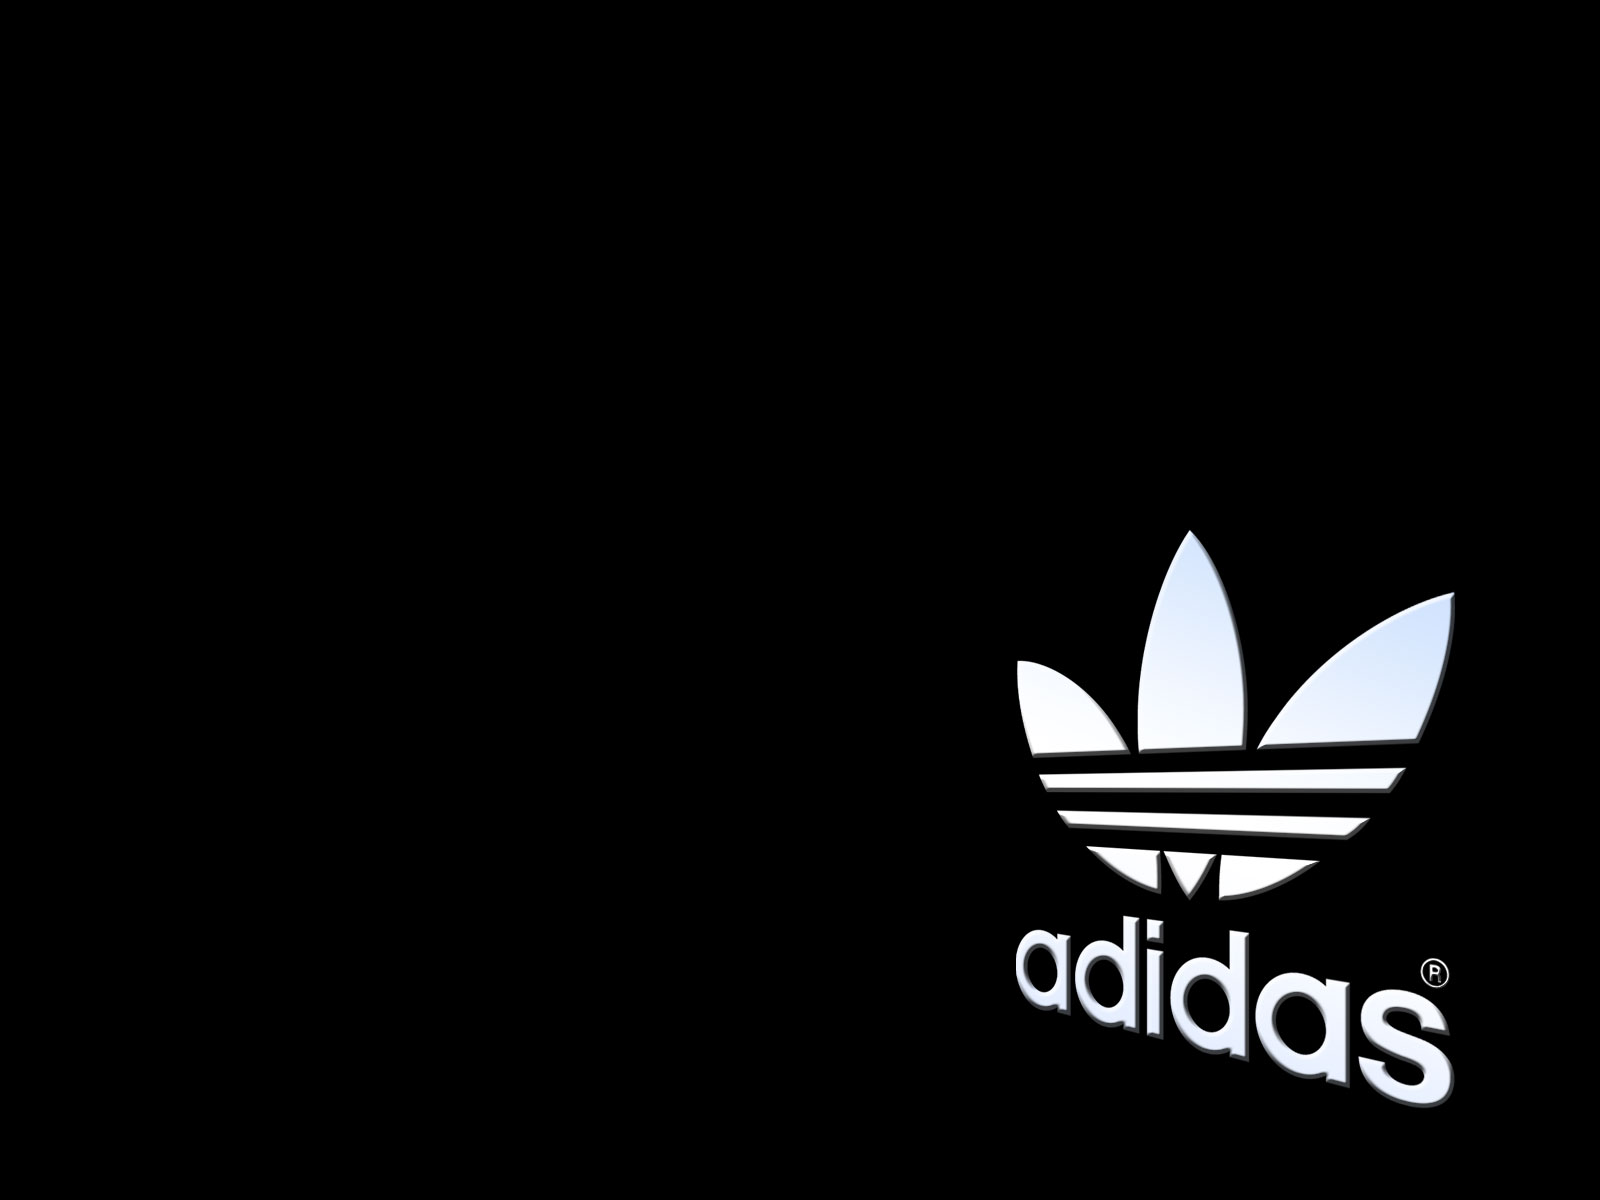 Description Adidas Logo Wallpaper is a hi res Wallpaper for pc